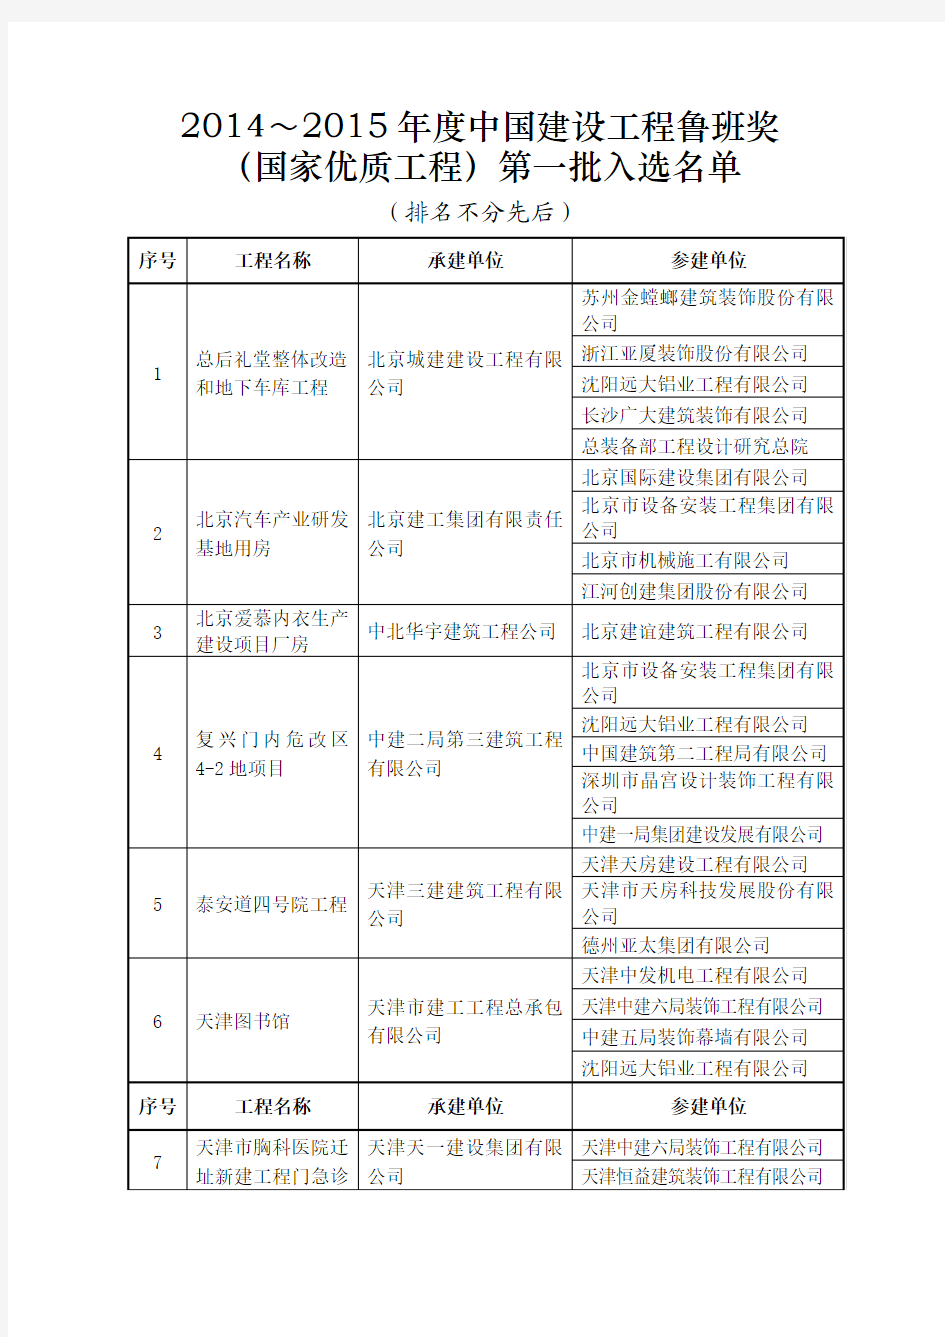 2014-2015年度中国建设工程鲁班奖-国家优质工程-第一批入选名单